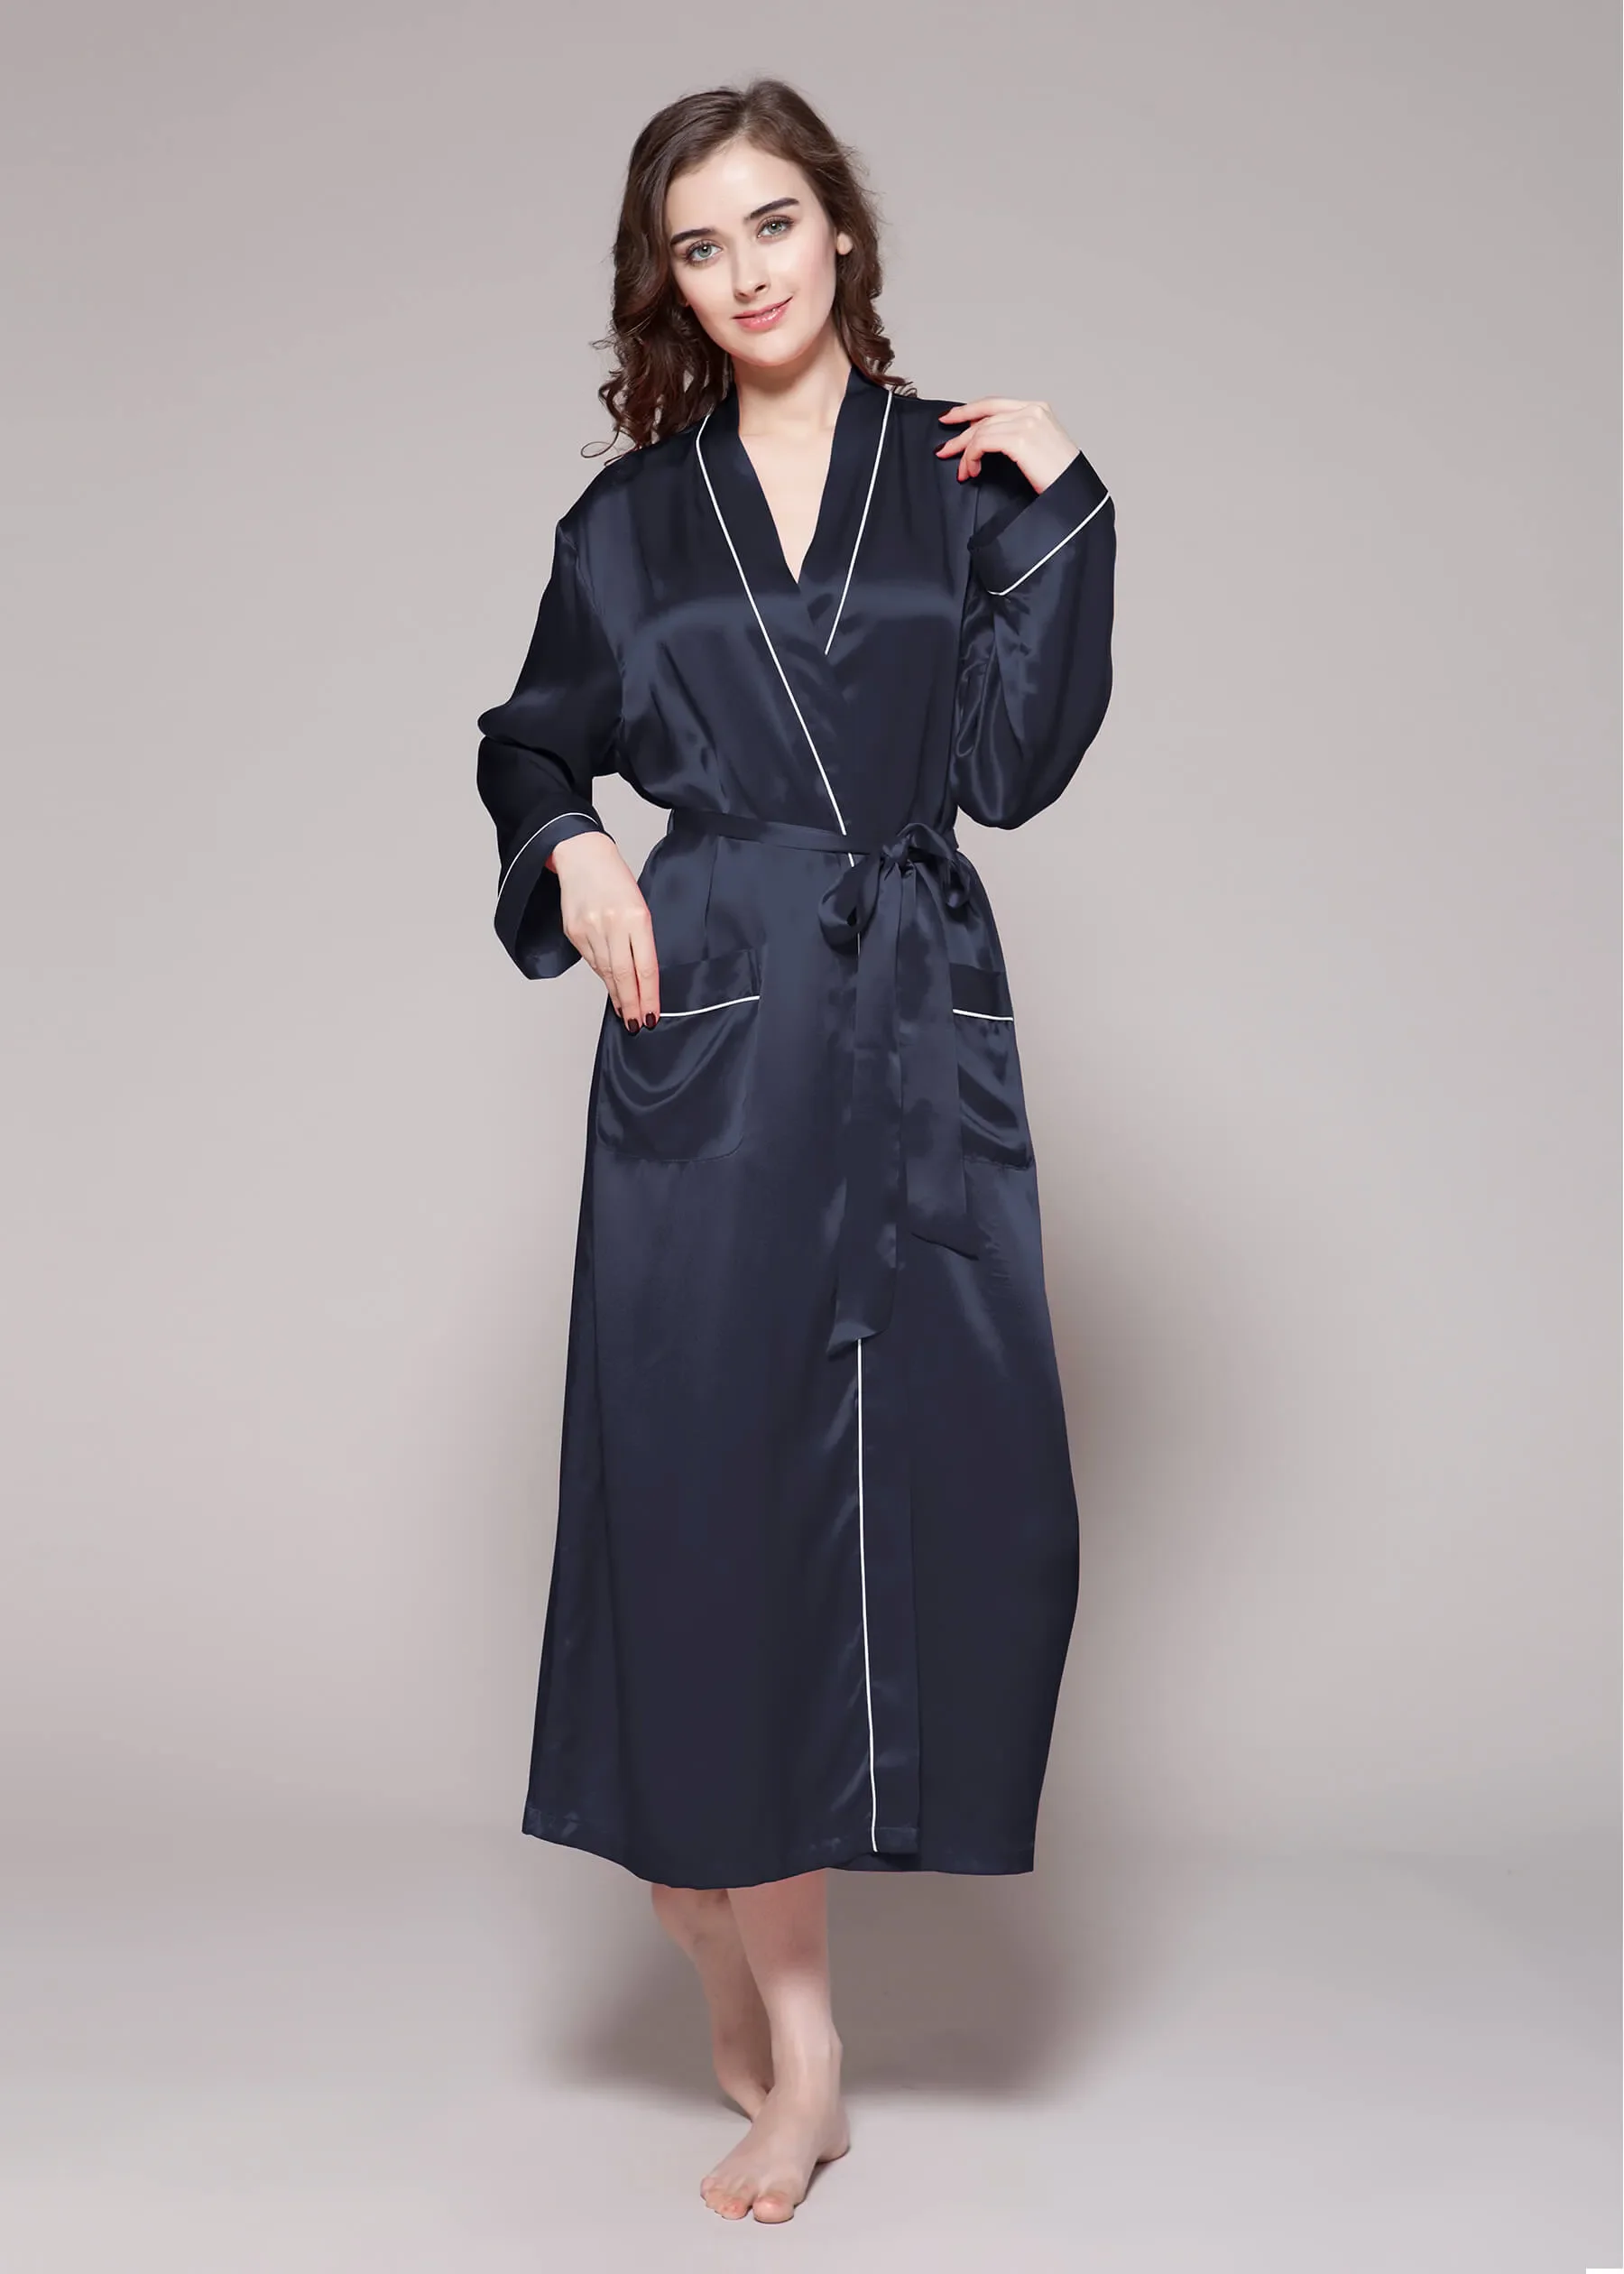 ladies stain night robe long pajamas women sleepwear wholesale korean black silk pajamas suit plus size silk pajama sets